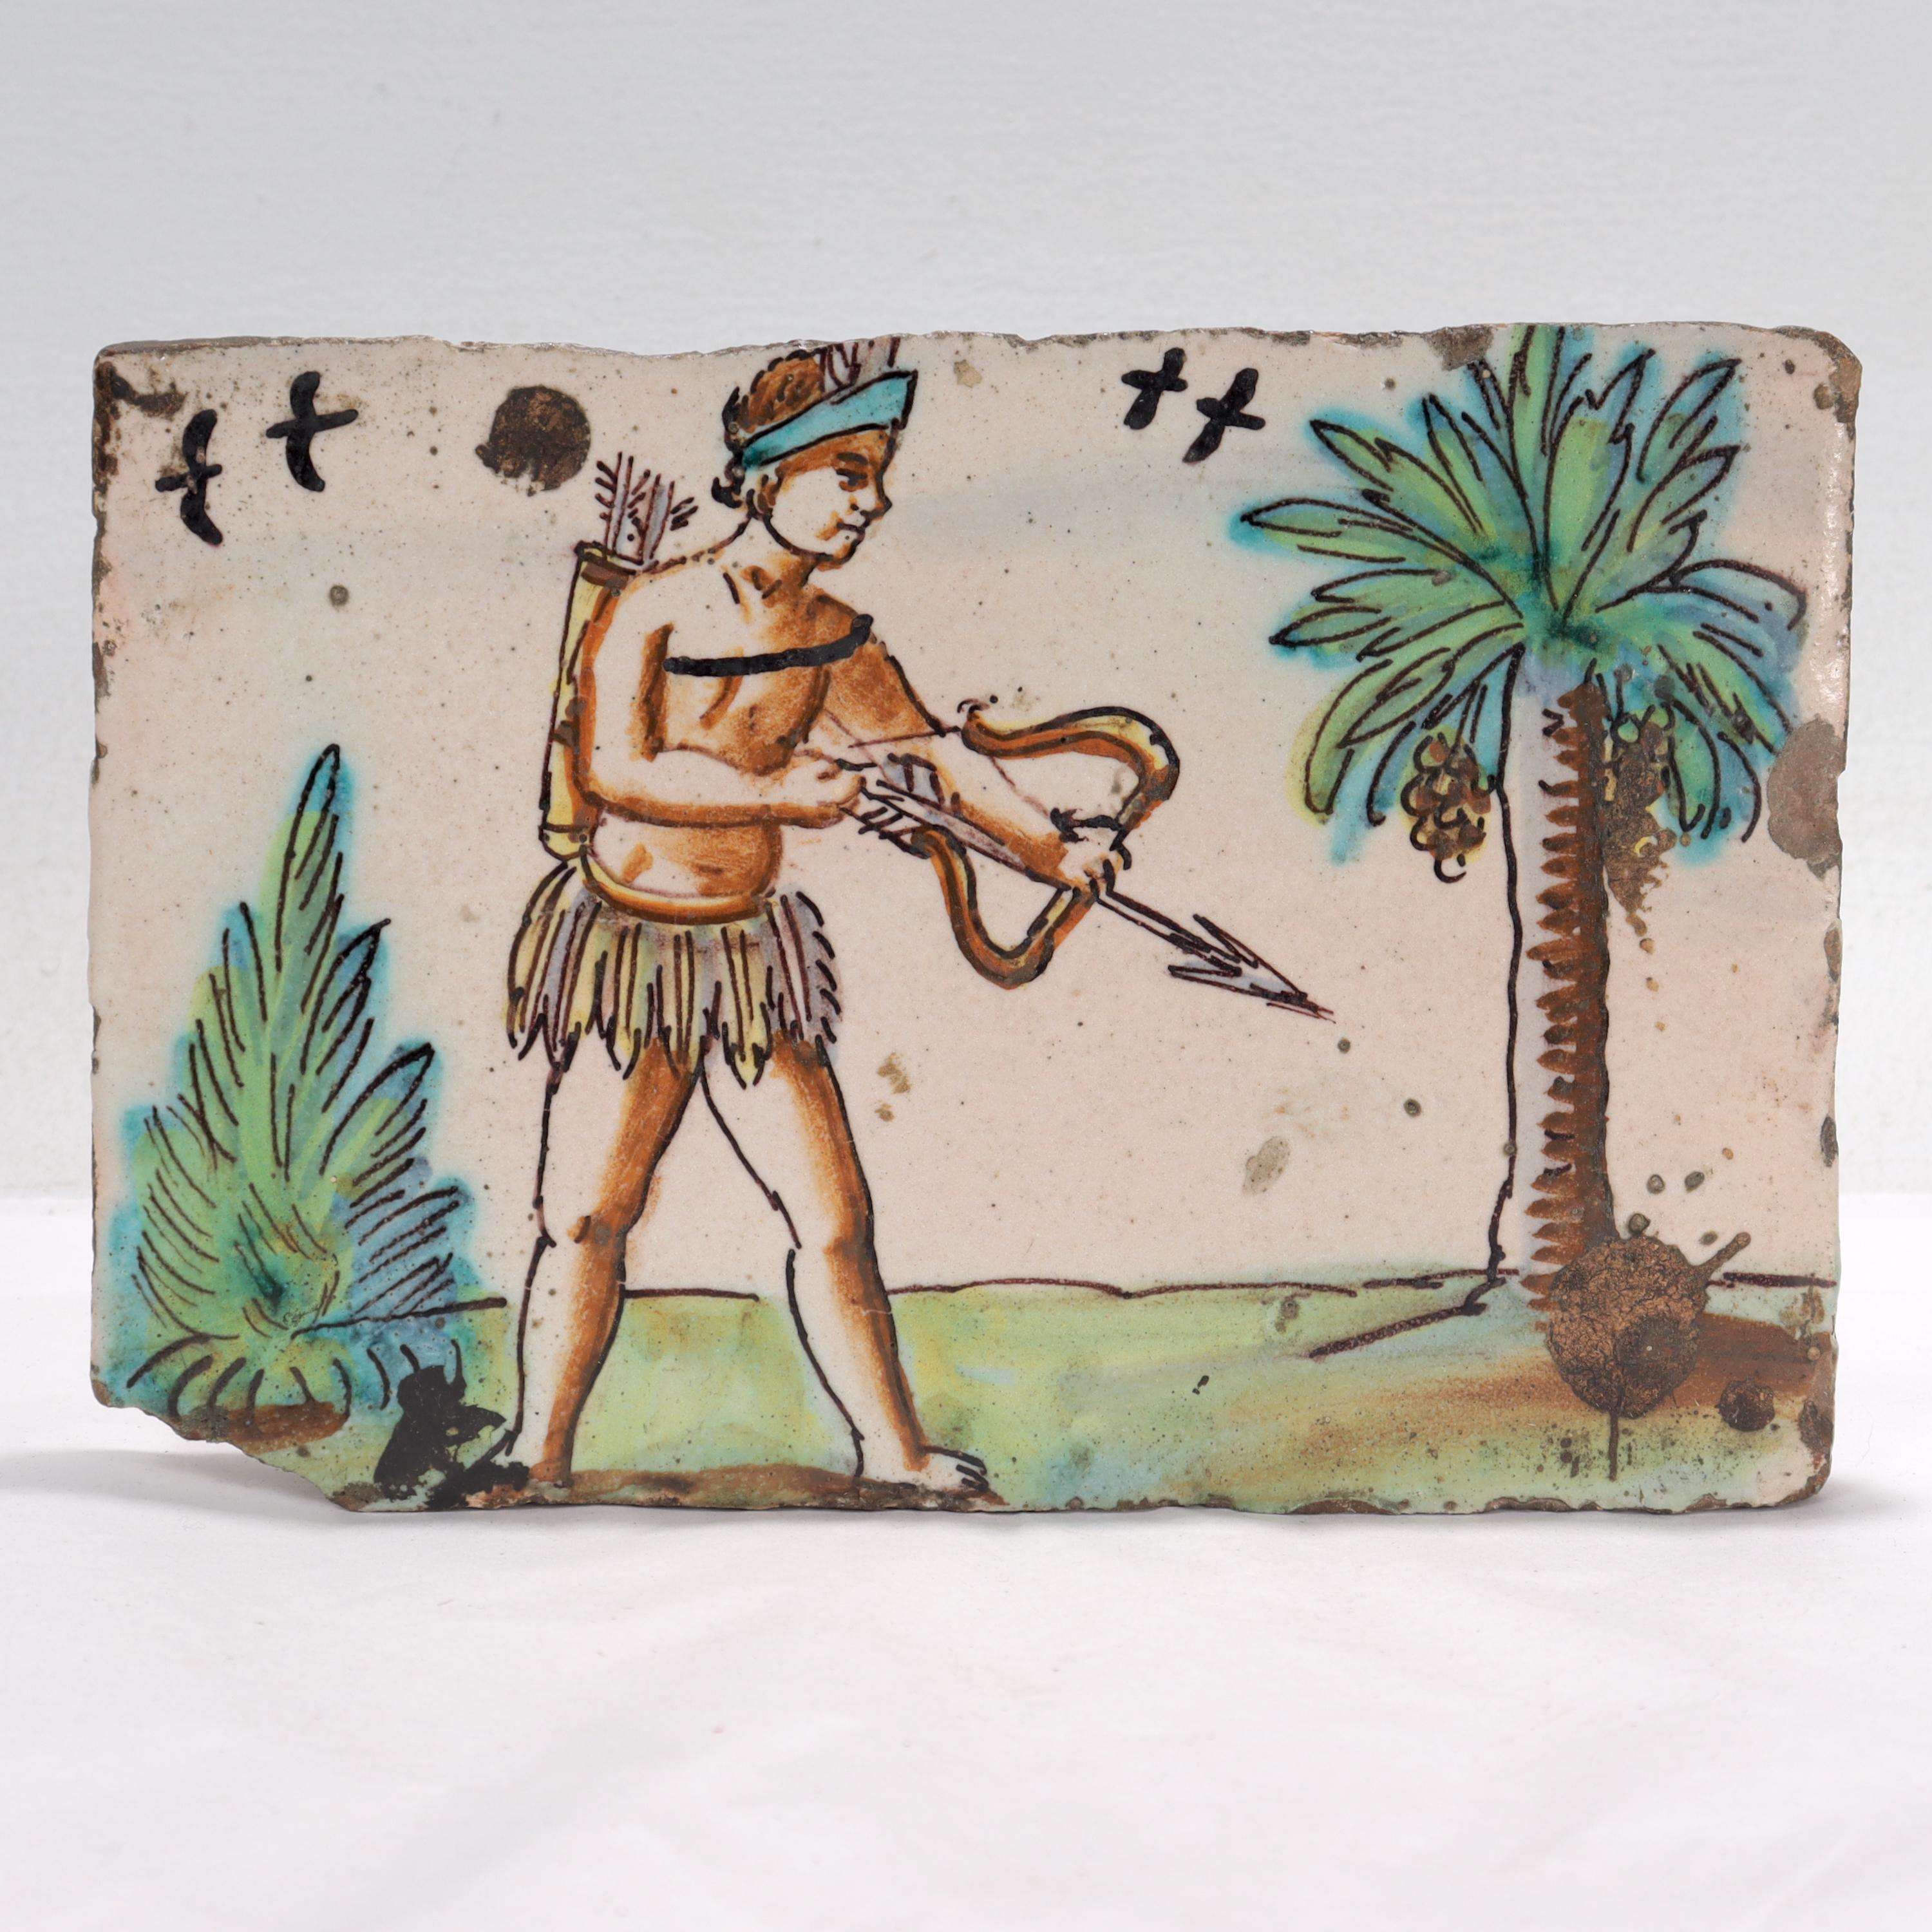 Un beau carreau de poterie antique du 18e siècle.

En terre cuite.

Représentation de ce qui semble être un archer amérindien dans une jupe d'herbe avec des oiseaux et des plantes en arrière-plan.

Probablement d'origine néerlandaise.

Tout